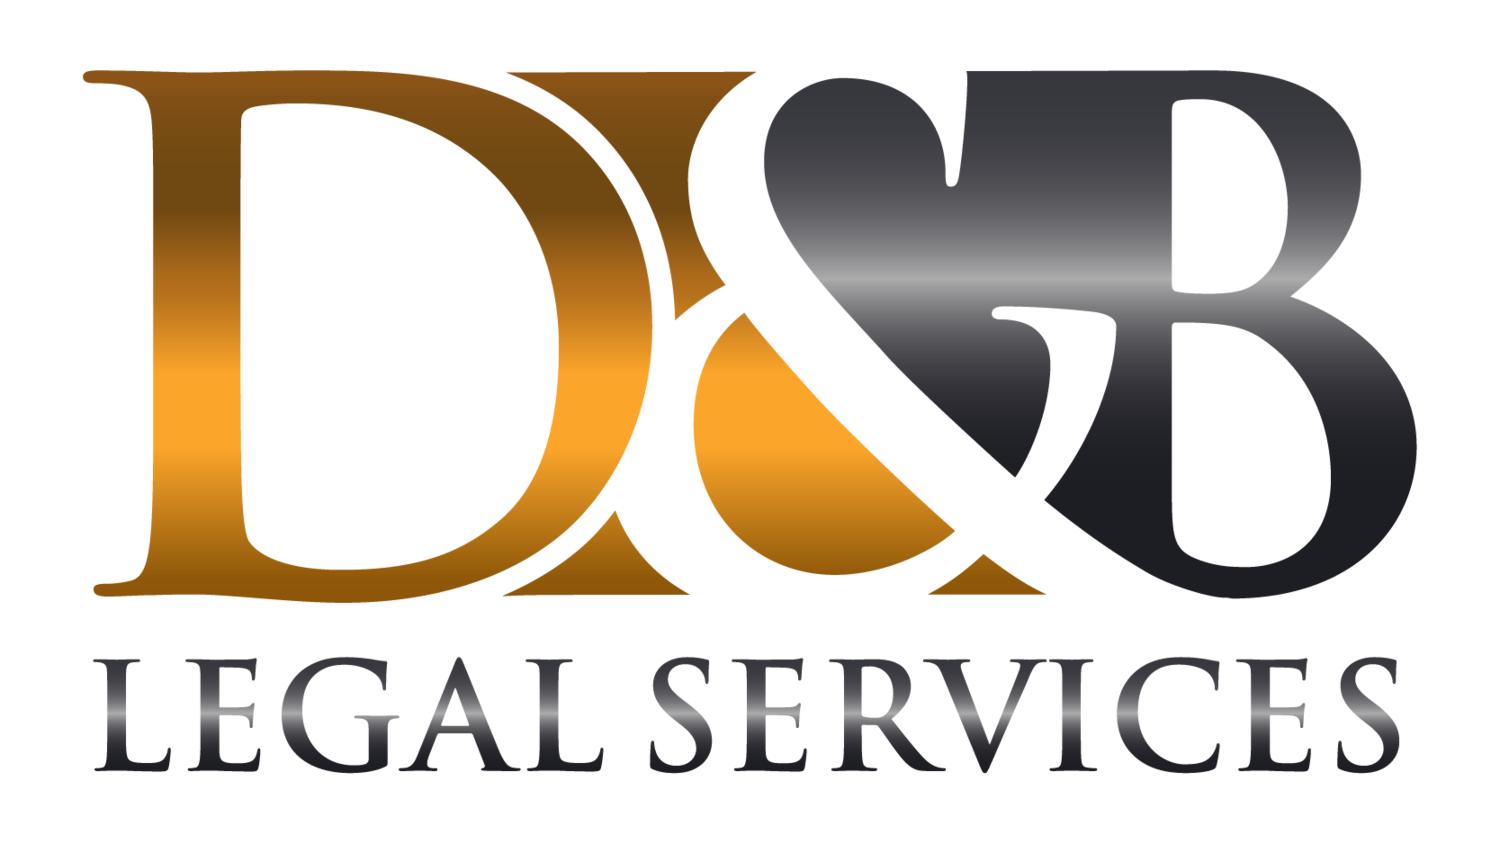 D&B Legal Services, Inc